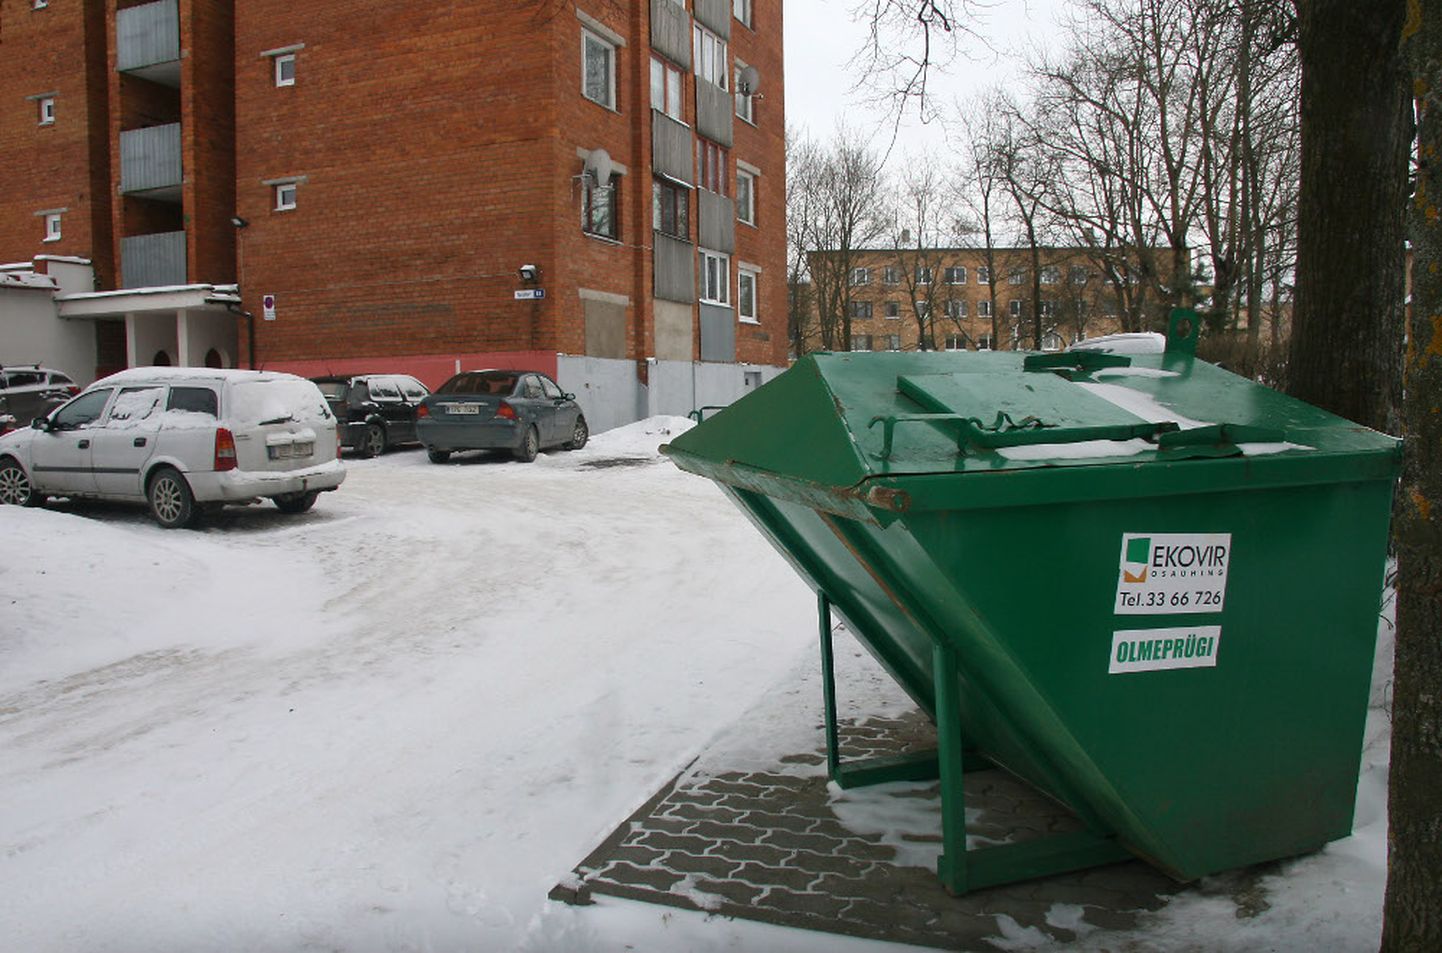 Kohtla-Järve linna ja firma Ekovir vahel viieks aastaks sõlmitud korraldatud jäätmeveo leping kehtib 2016. aasta 1. oktoobrist. Ent juba 2016. aasta detsembris tahtis firma selle lepingu lõpetada.

PEETER LILLEVÄLI